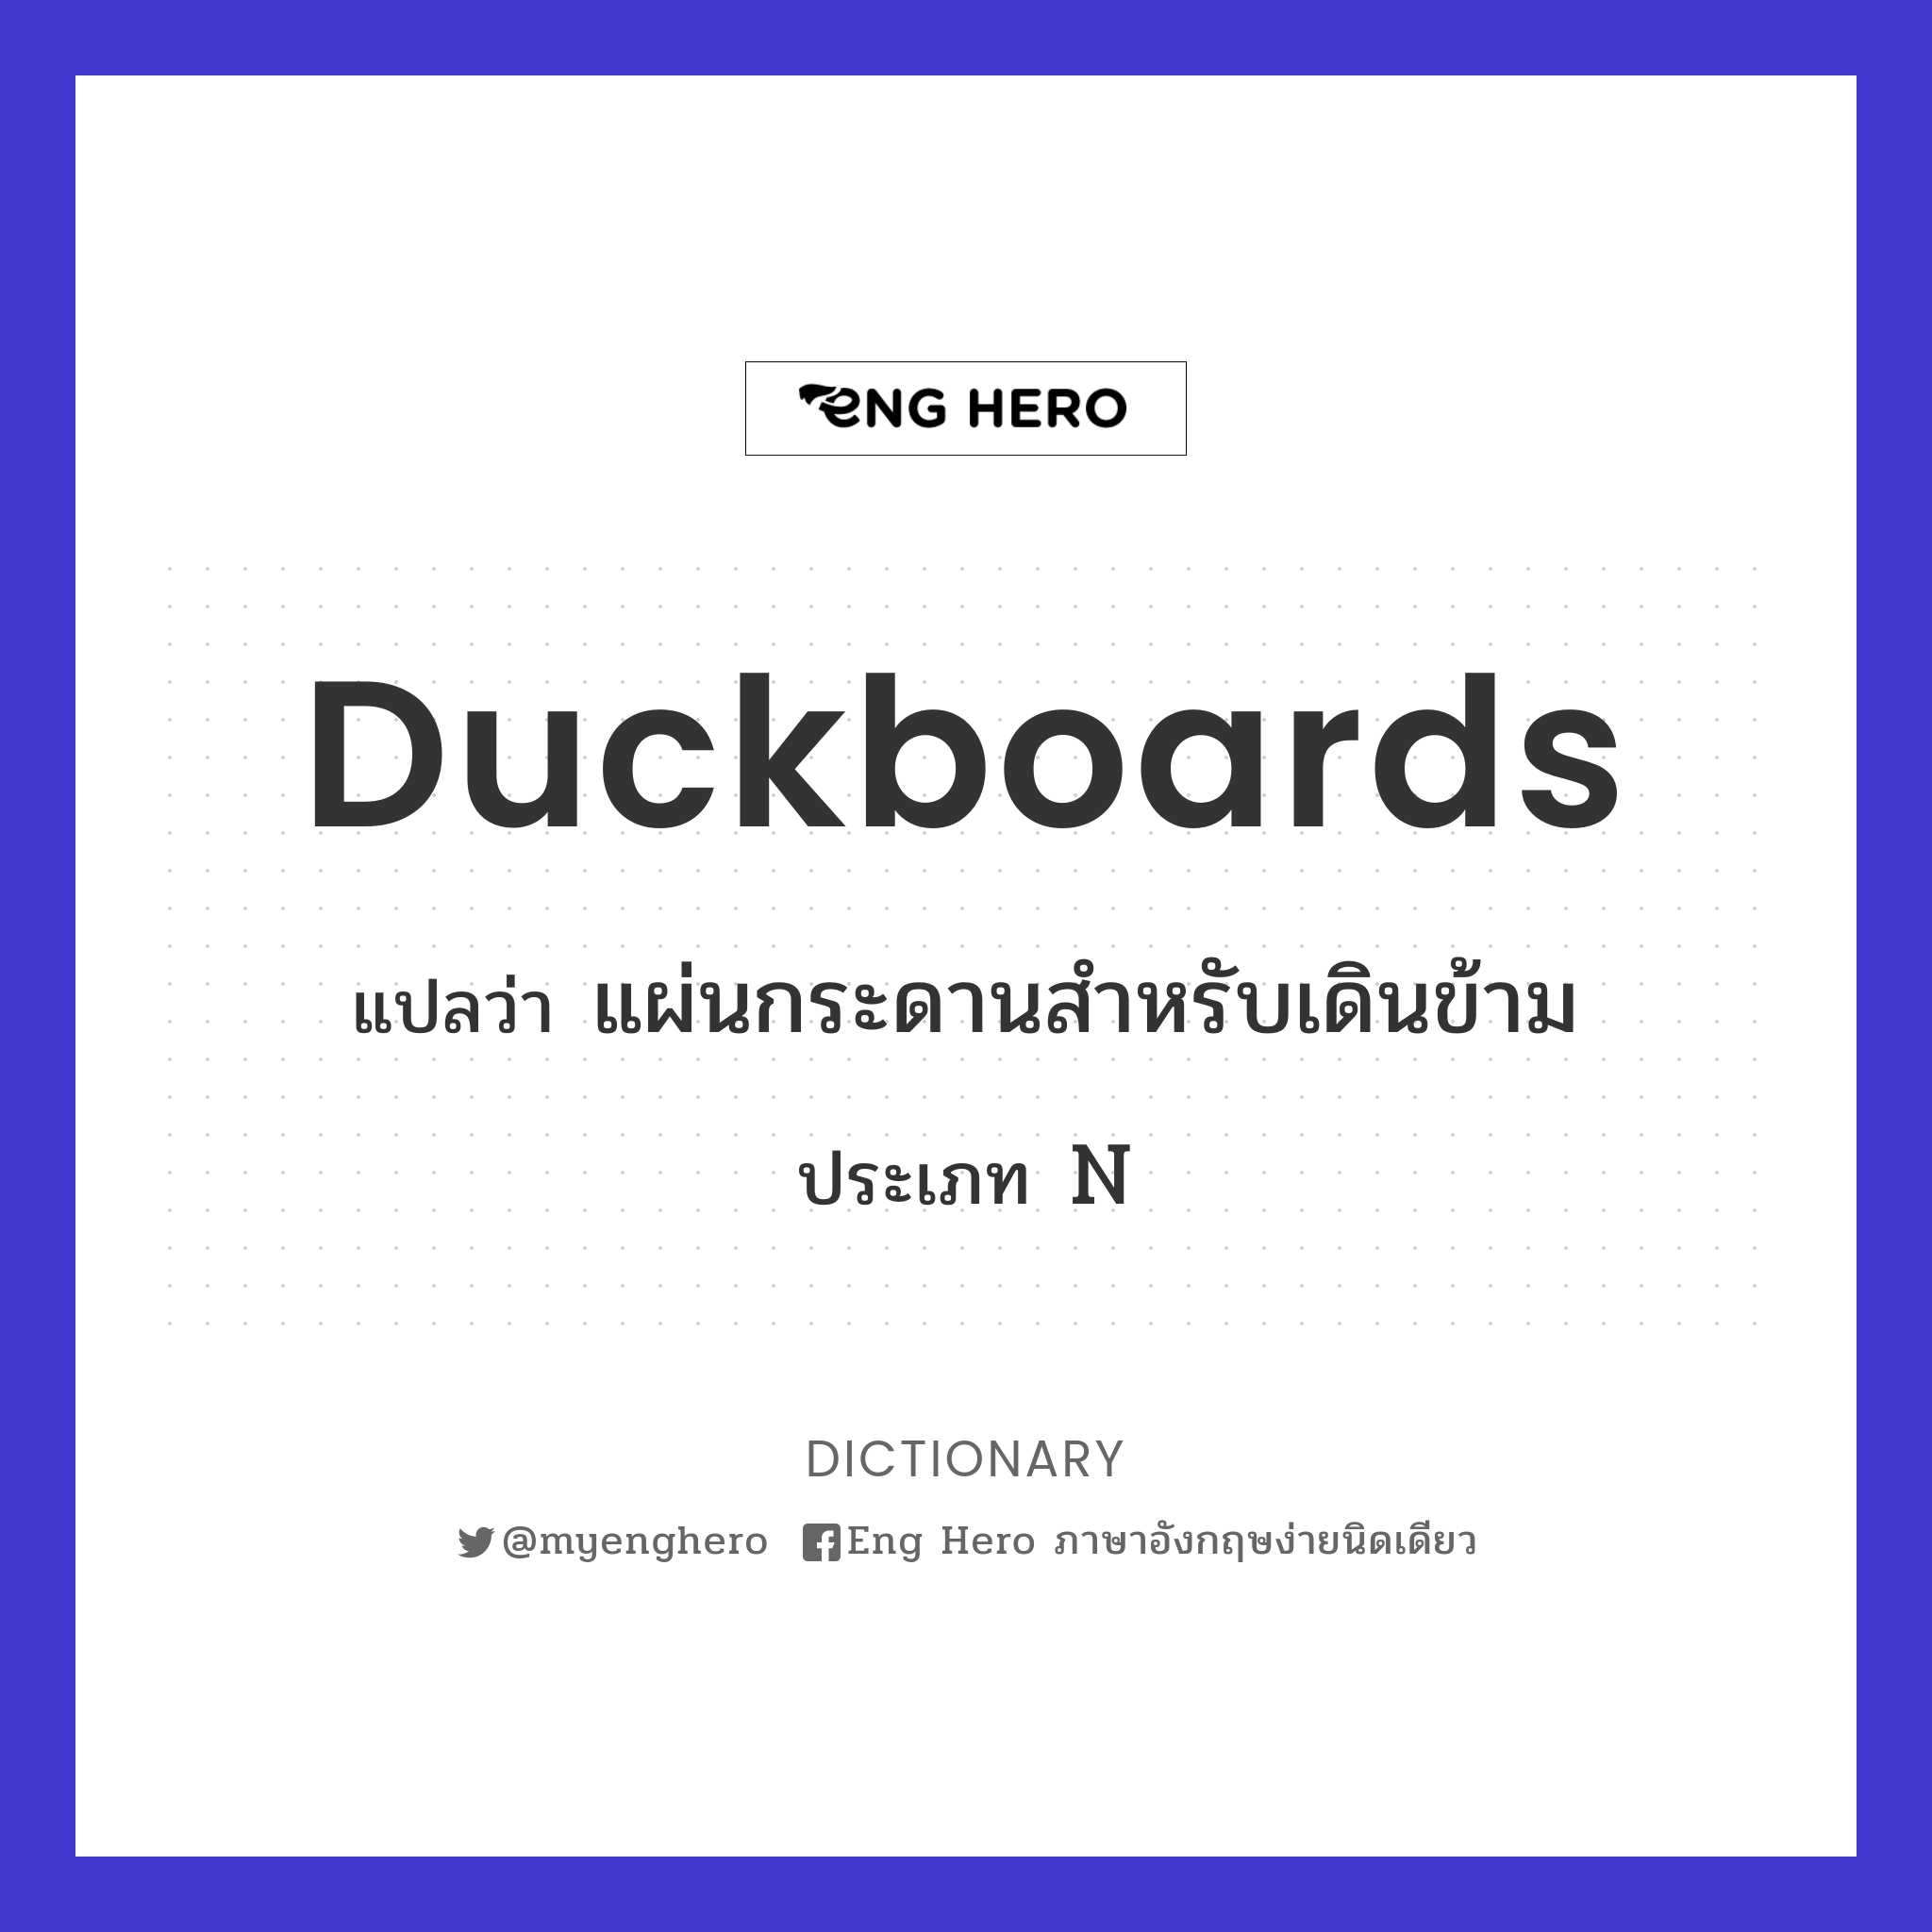 duckboards